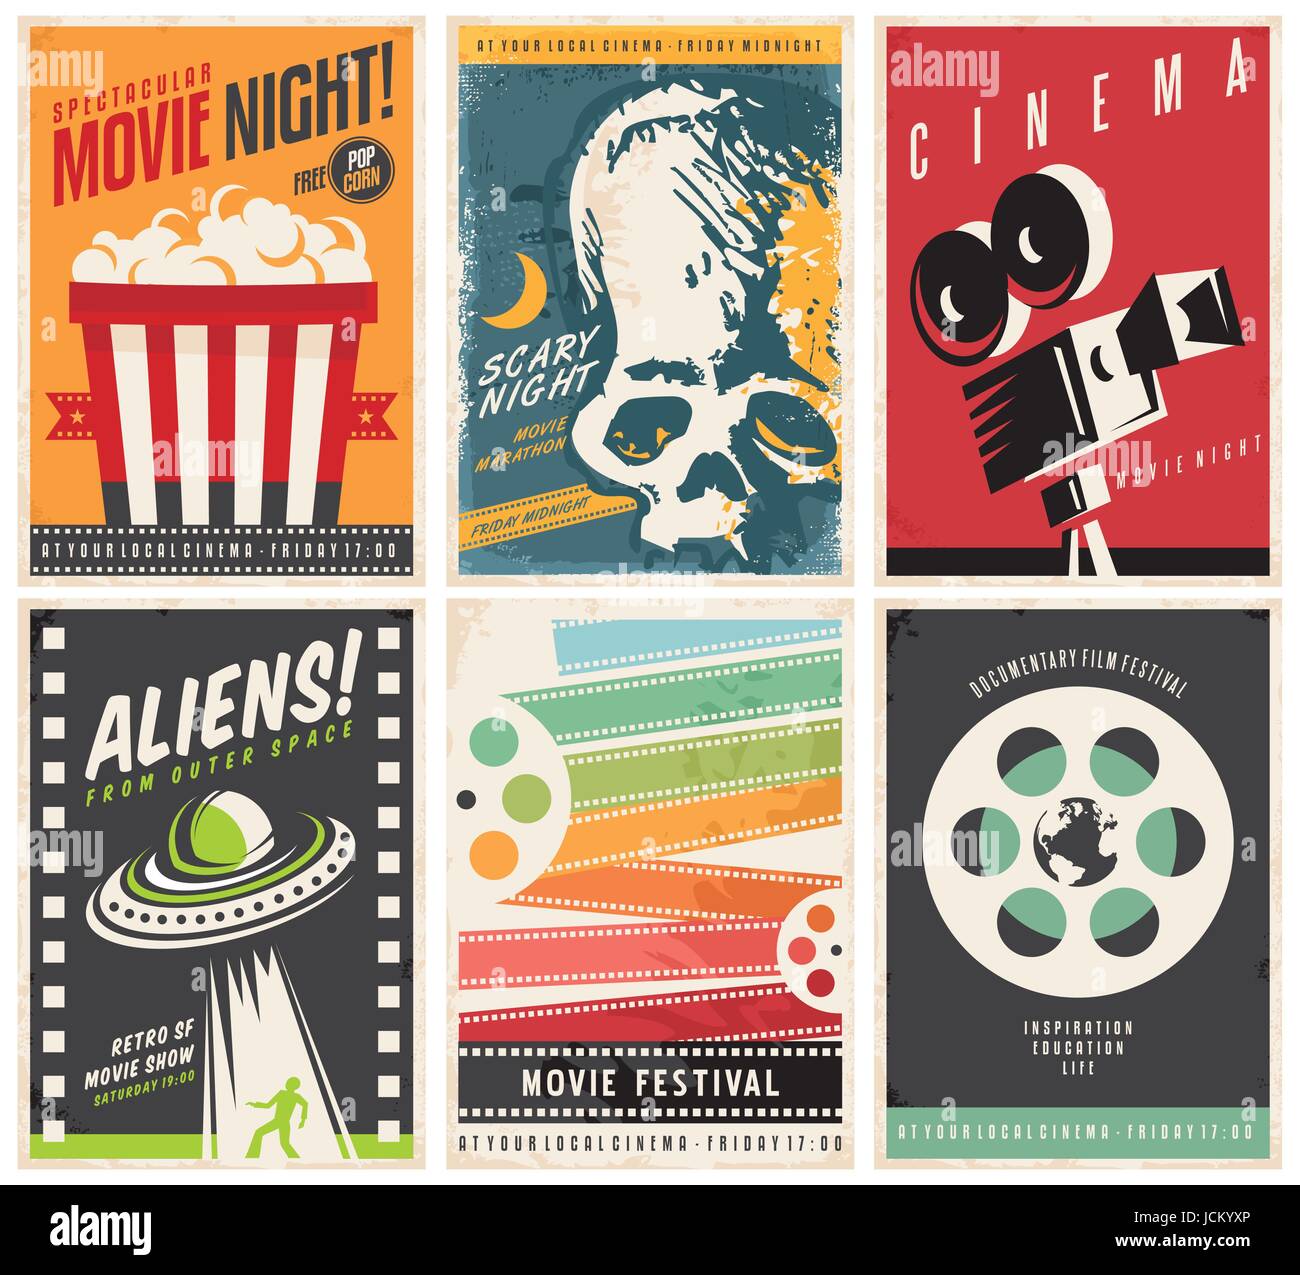 Kino Poster Sammlung mit verschiedenen Film und Film-Genres und Themen. Kreative Retro-Vektor-Design-Konzept mit sechs Werbe-Broschüren. Stock Vektor